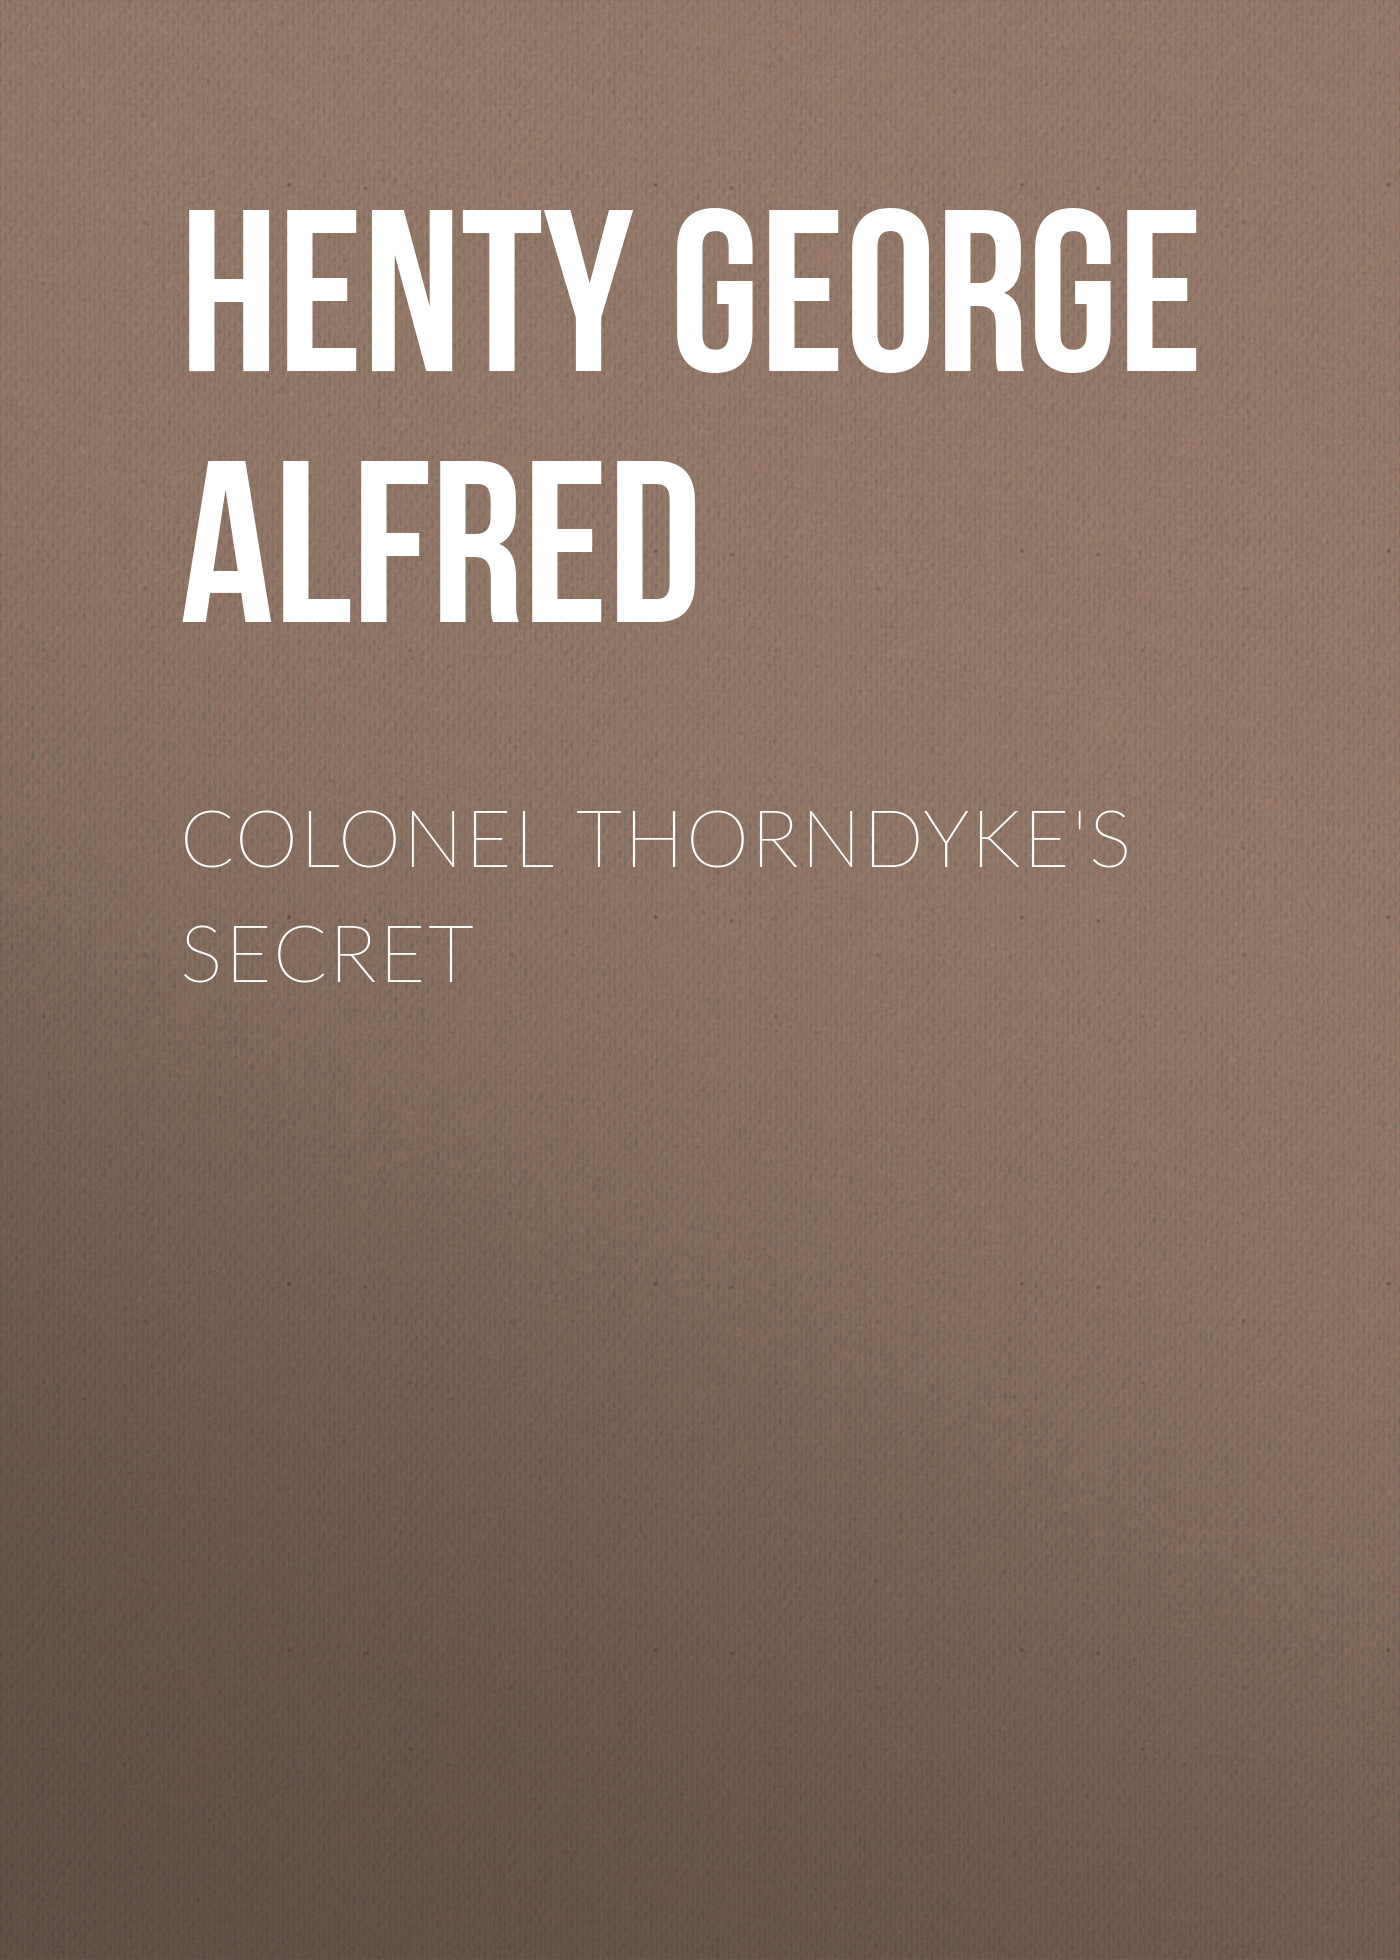 Книга Colonel Thorndyke's Secret из серии , созданная George Henty, может относится к жанру Зарубежная классика, Классические детективы, Зарубежные детективы, Зарубежная старинная литература. Стоимость электронной книги Colonel Thorndyke's Secret с идентификатором 36322764 составляет 0 руб.